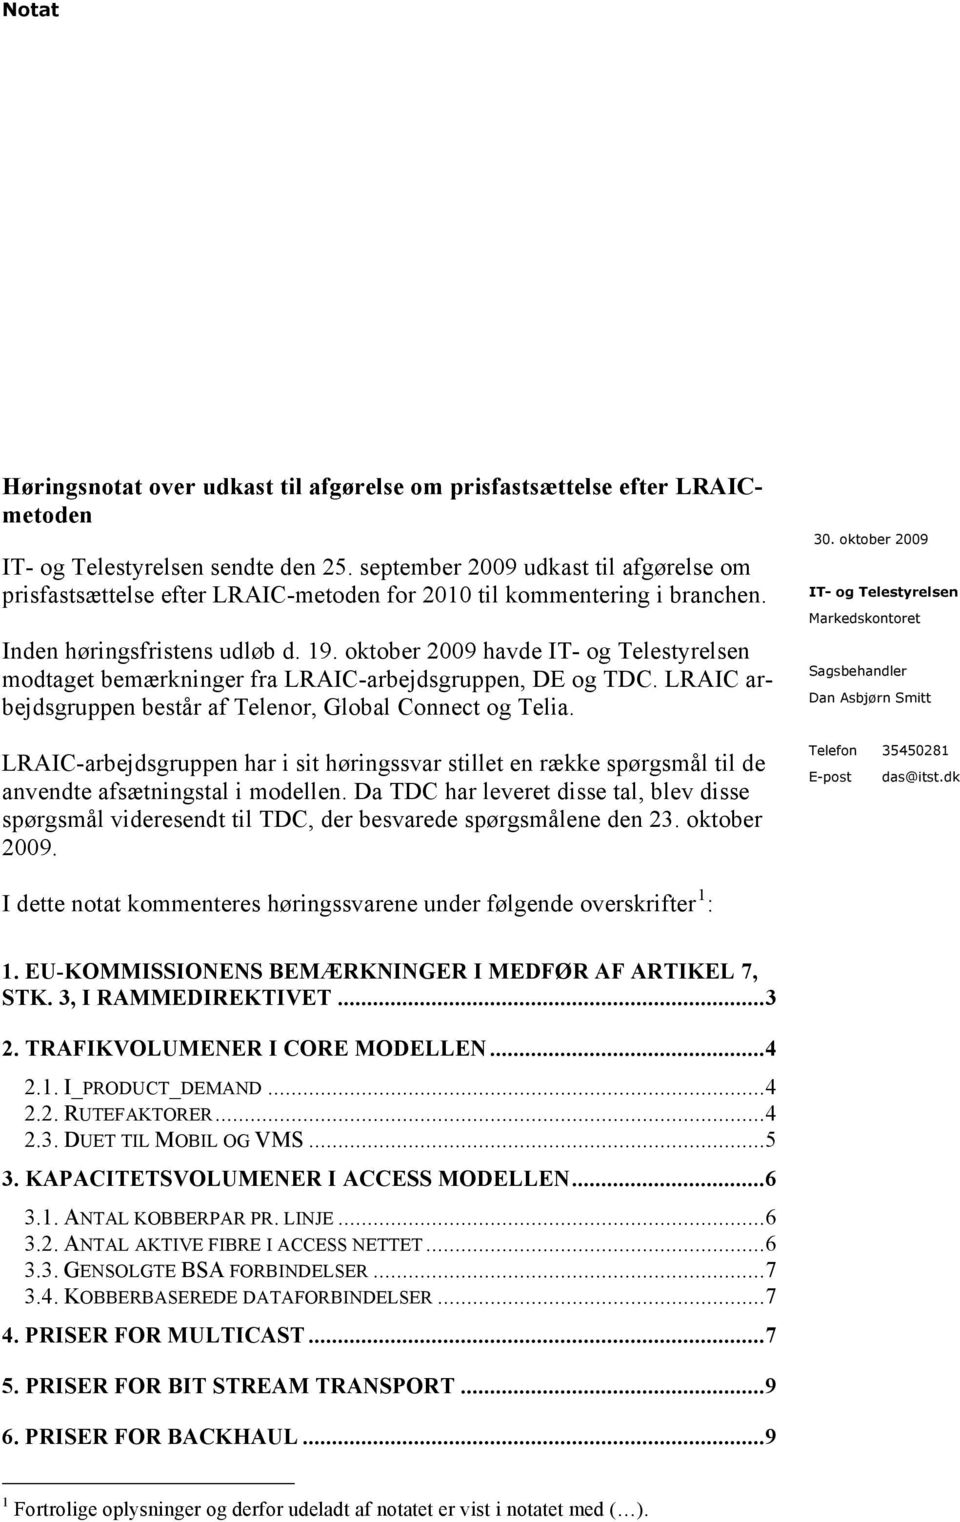 oktober 2009 havde modtaget bemærkninger fra LRAIC-arbejdsgruppen, DE og TDC. LRAIC arbejdsgruppen består af Telenor, Global Connect og Telia.